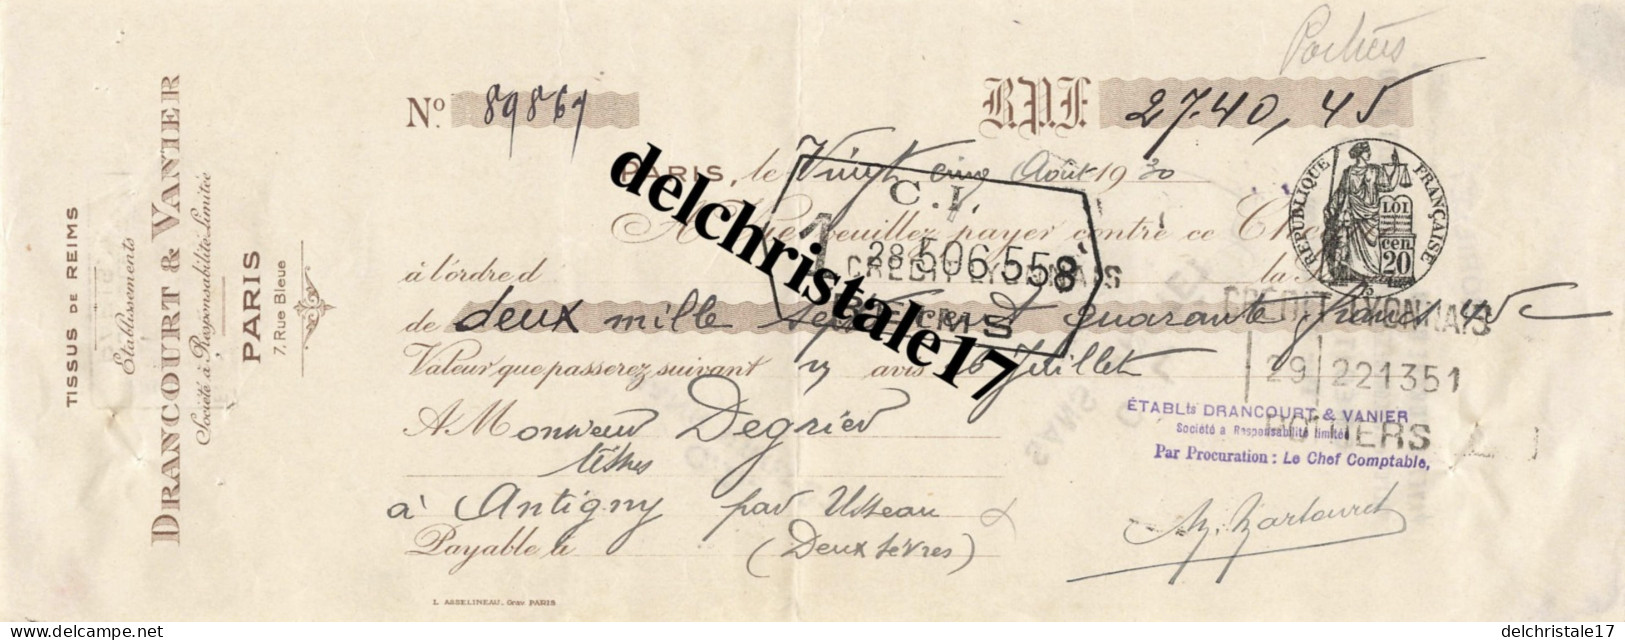 75 0160 PARIS SEINE 1930 Tissus De Reims Éts DRANCOURT & VANIER 7 Rue Bleue à M. DEGRIER TISSUS à ANTIGNY-D'USSEAU (79) - Chèques & Chèques De Voyage